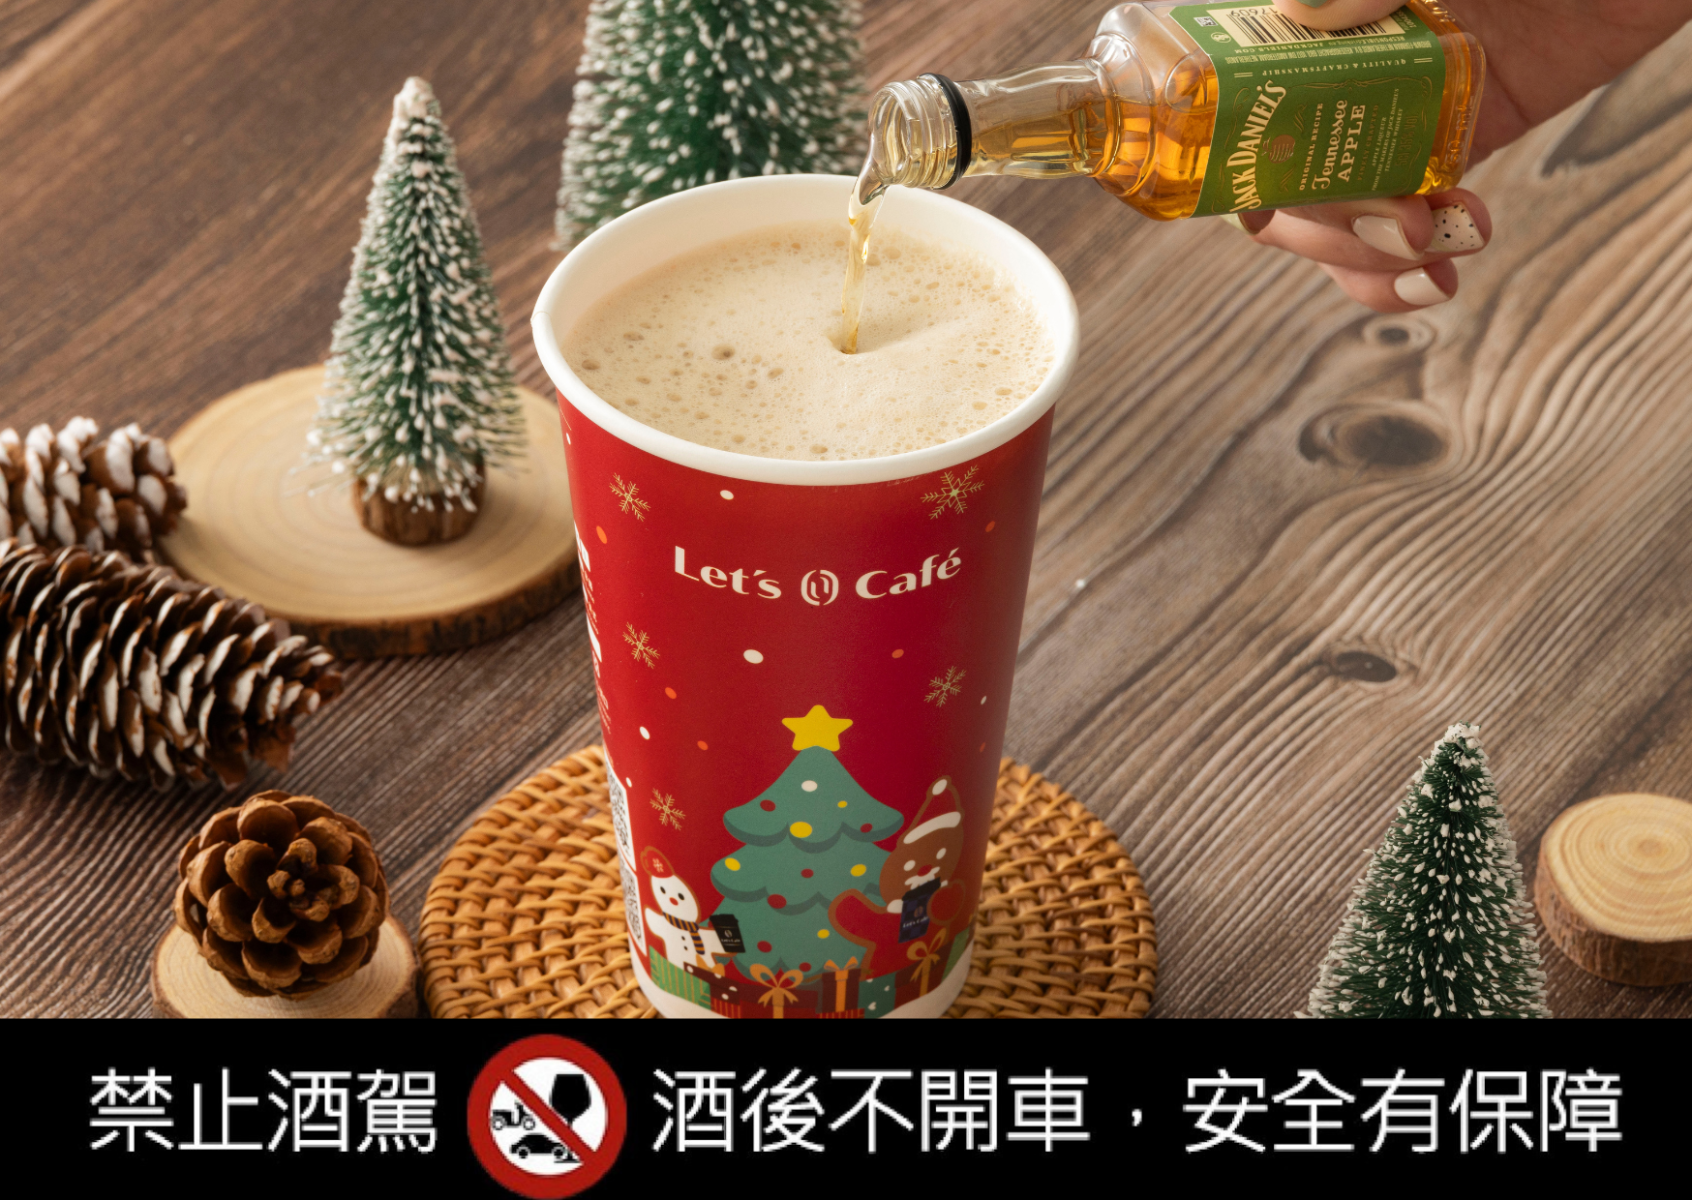 聖誕到跨年一起醉醺Bar！全家推出大人味特調，還送捏捏杯隨手Chill舒壓